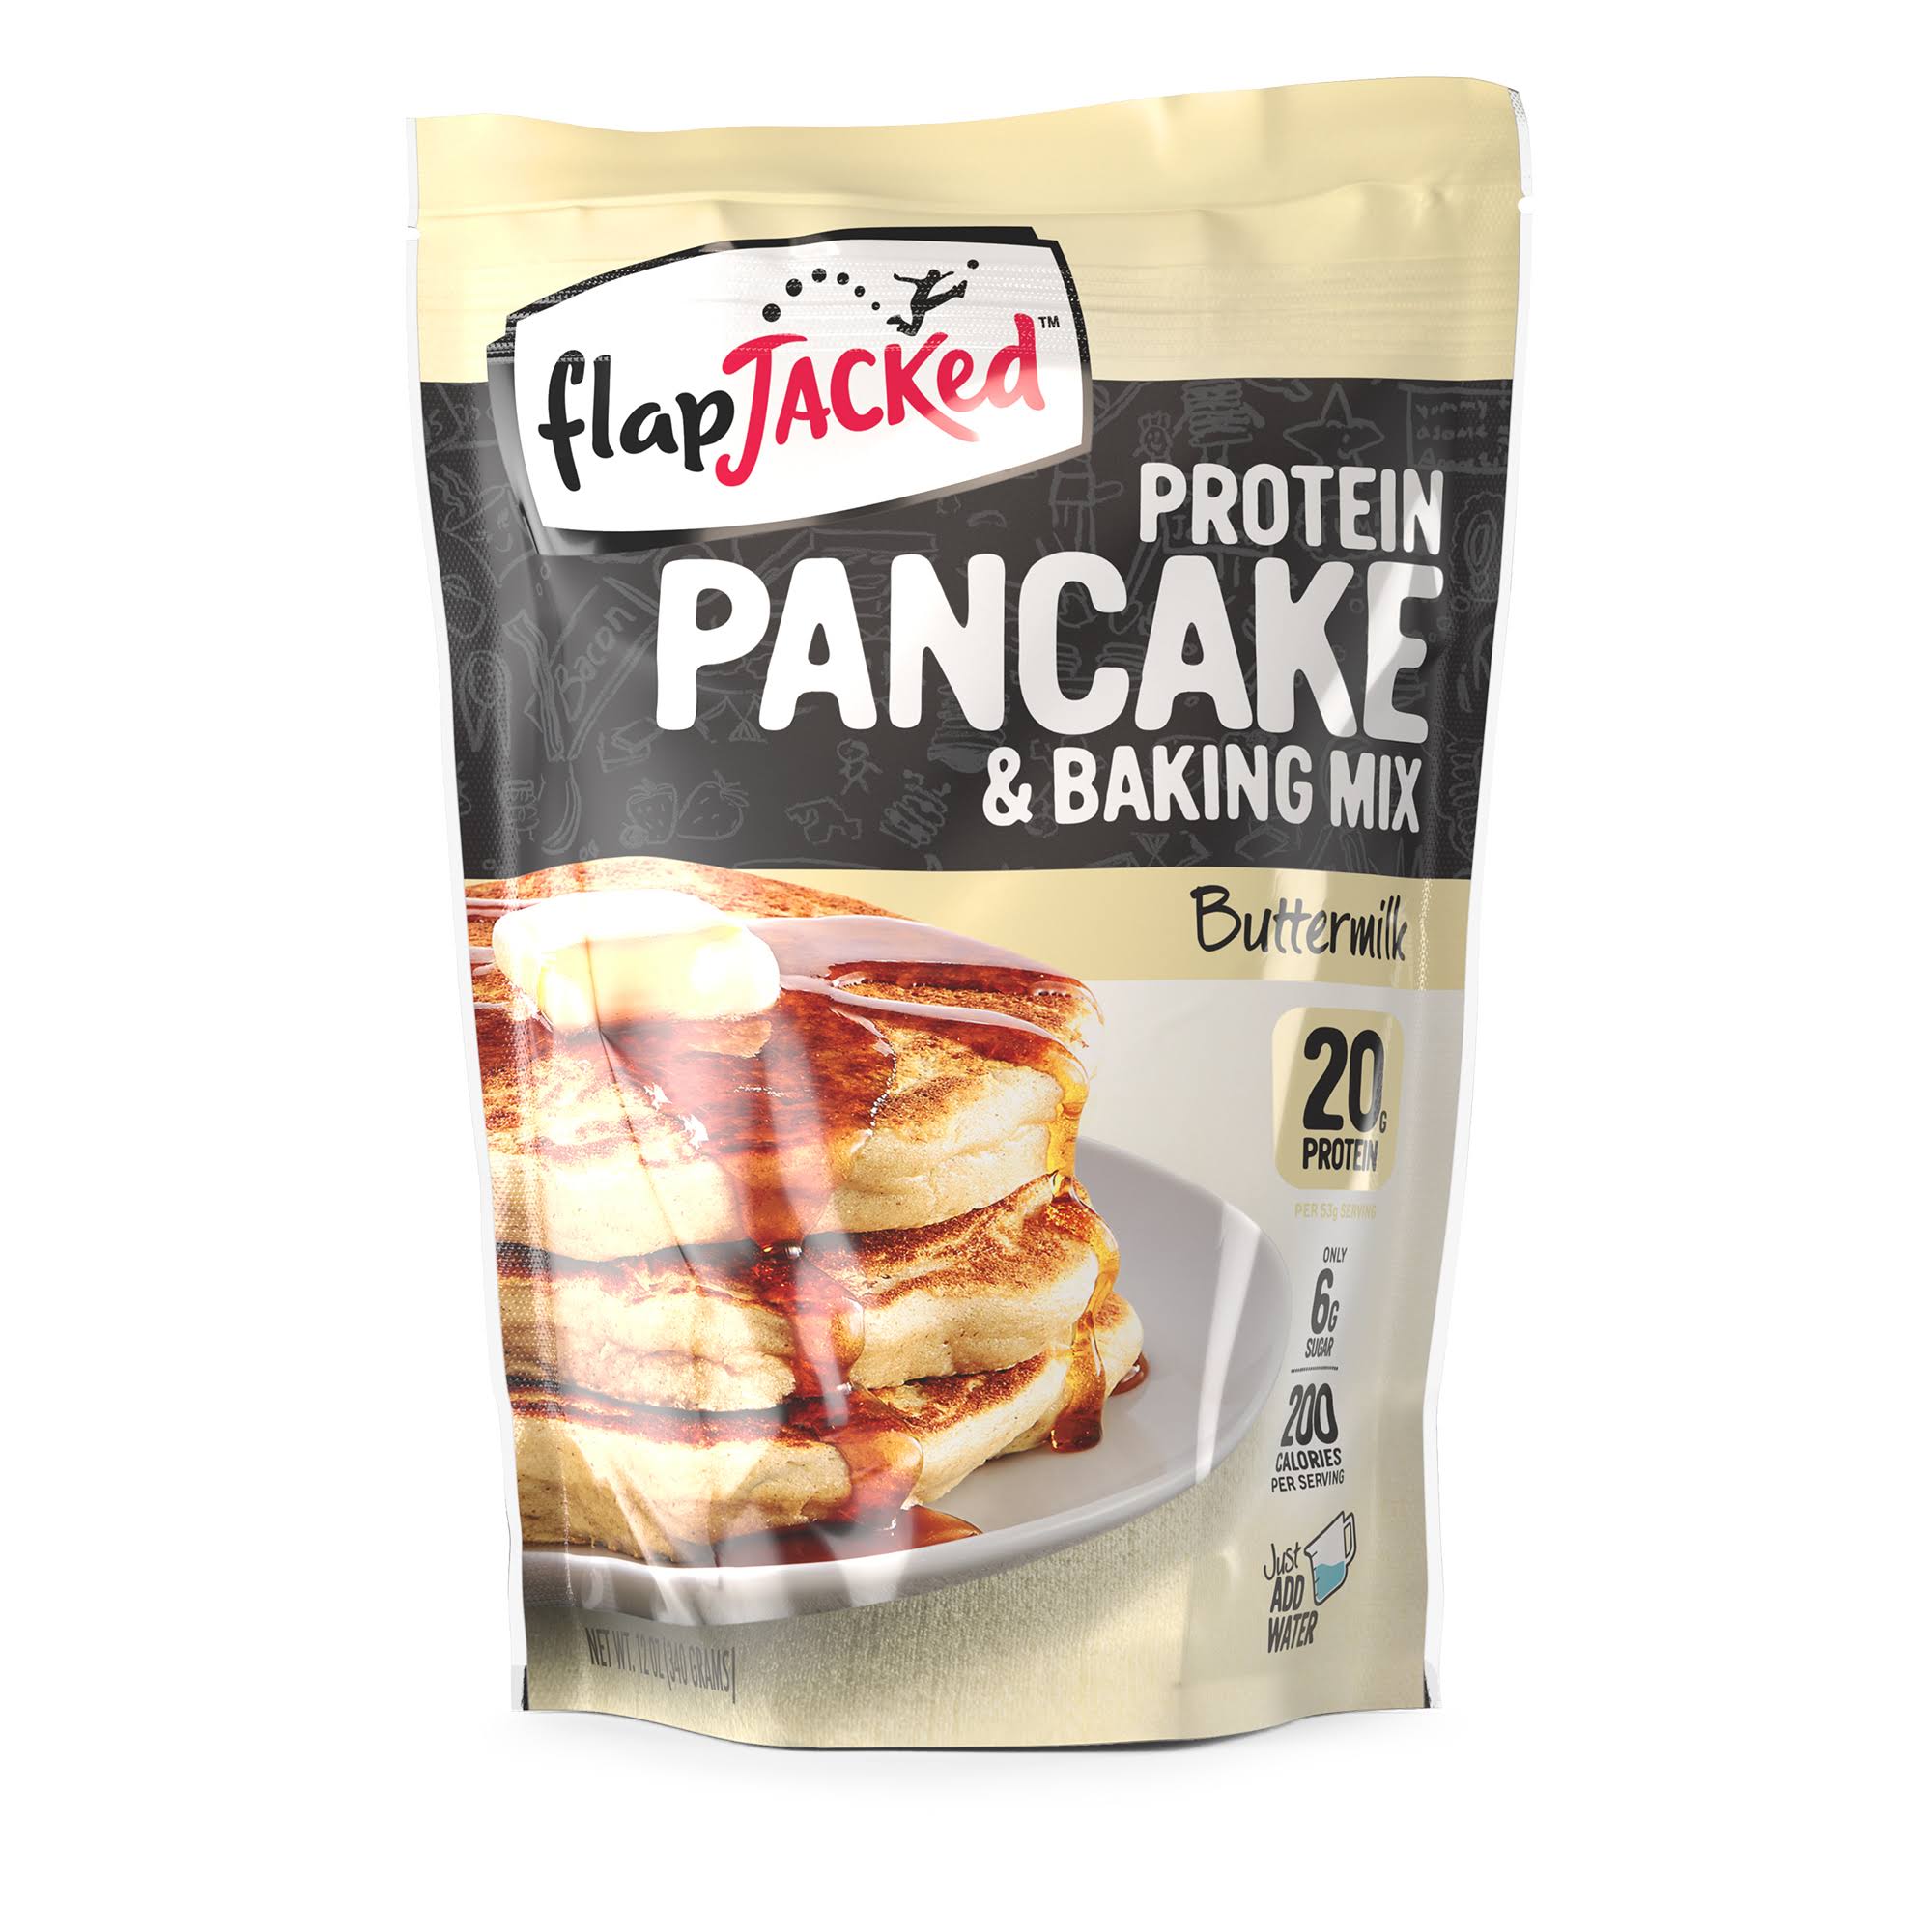 FlapJacked Protein Pancake & Baking Mix - Buttermilk - 12oz